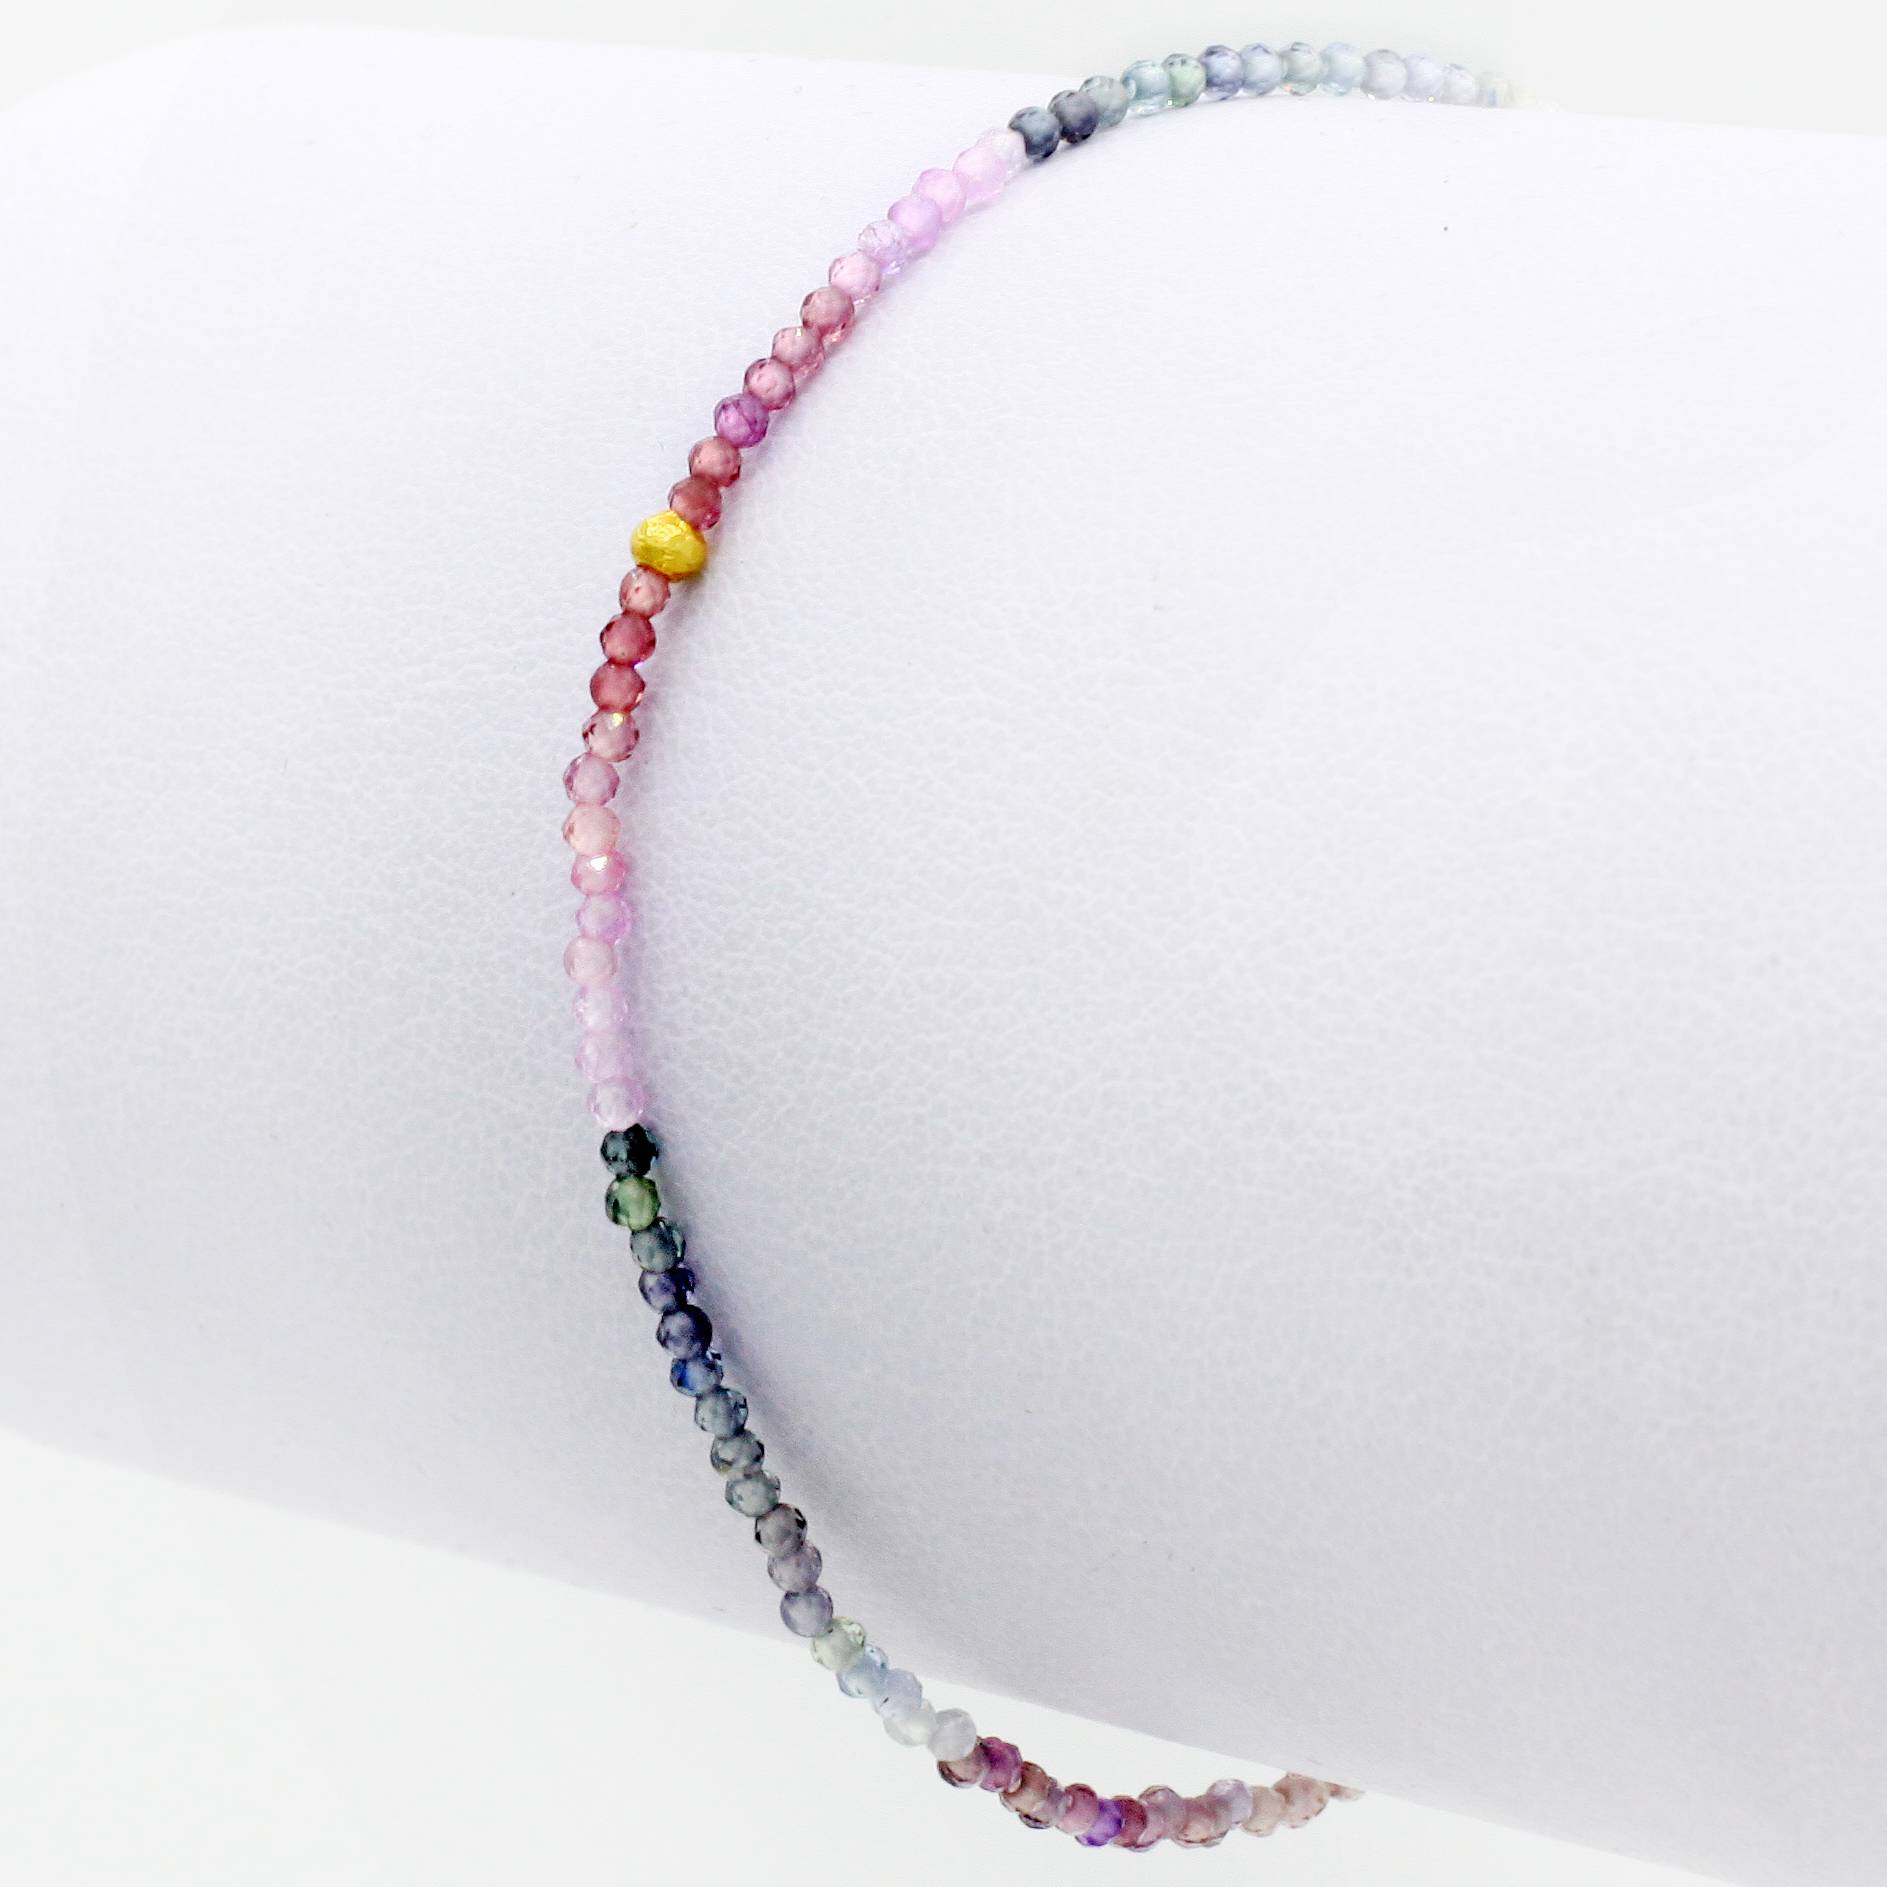 Margaret Solow Jewelry | Pink Sapphire + 18k Gold Beaded Bracelet | Firecracker